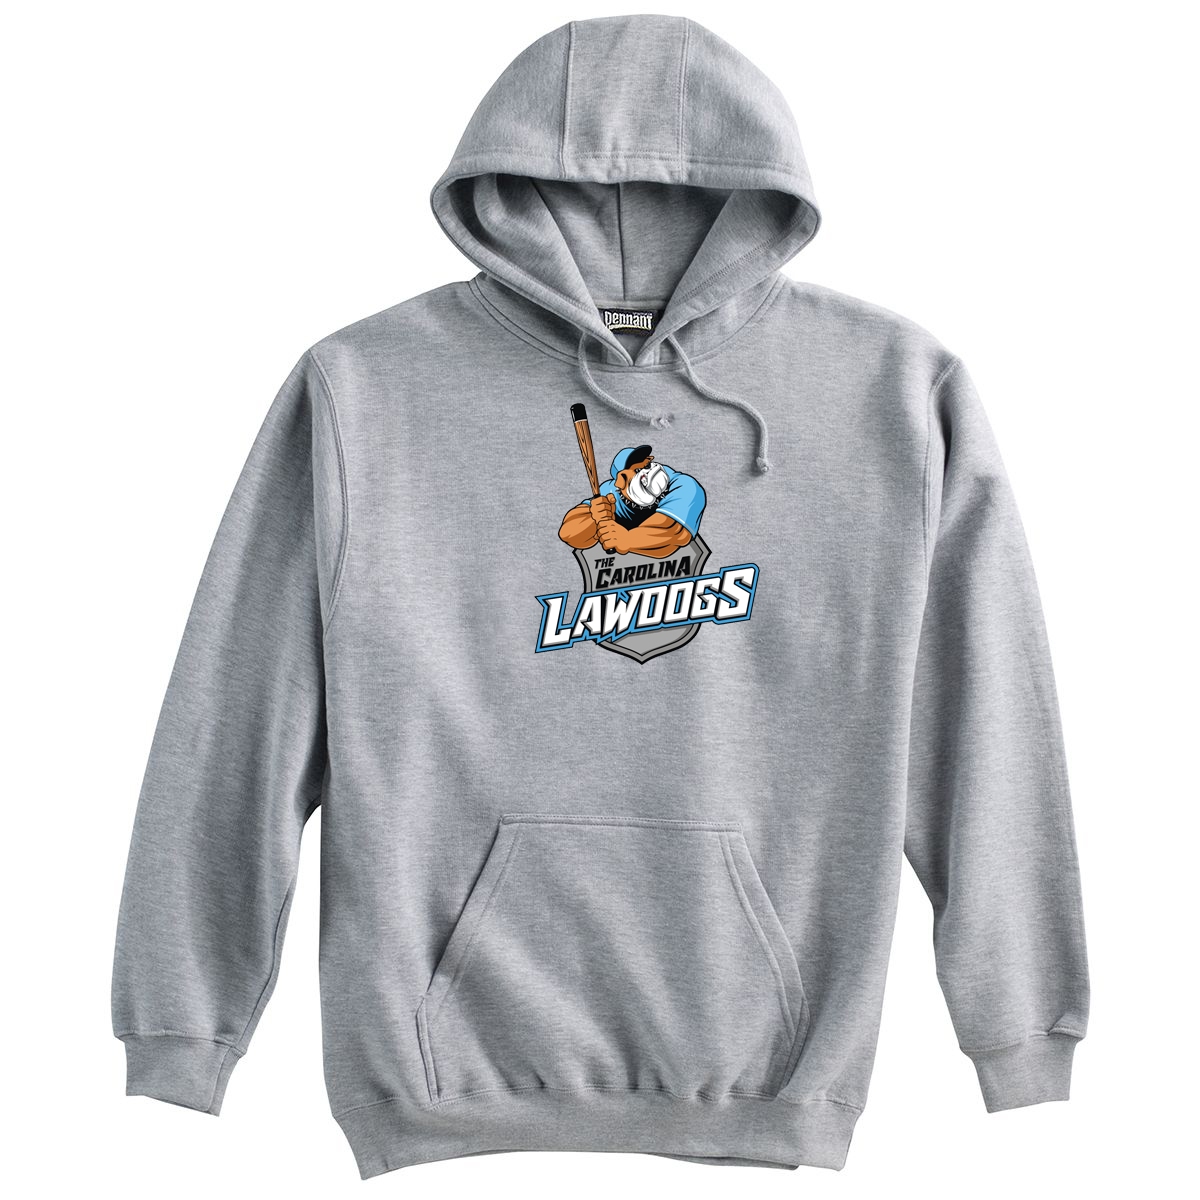 Lawdogs Baseball Sweatshirt